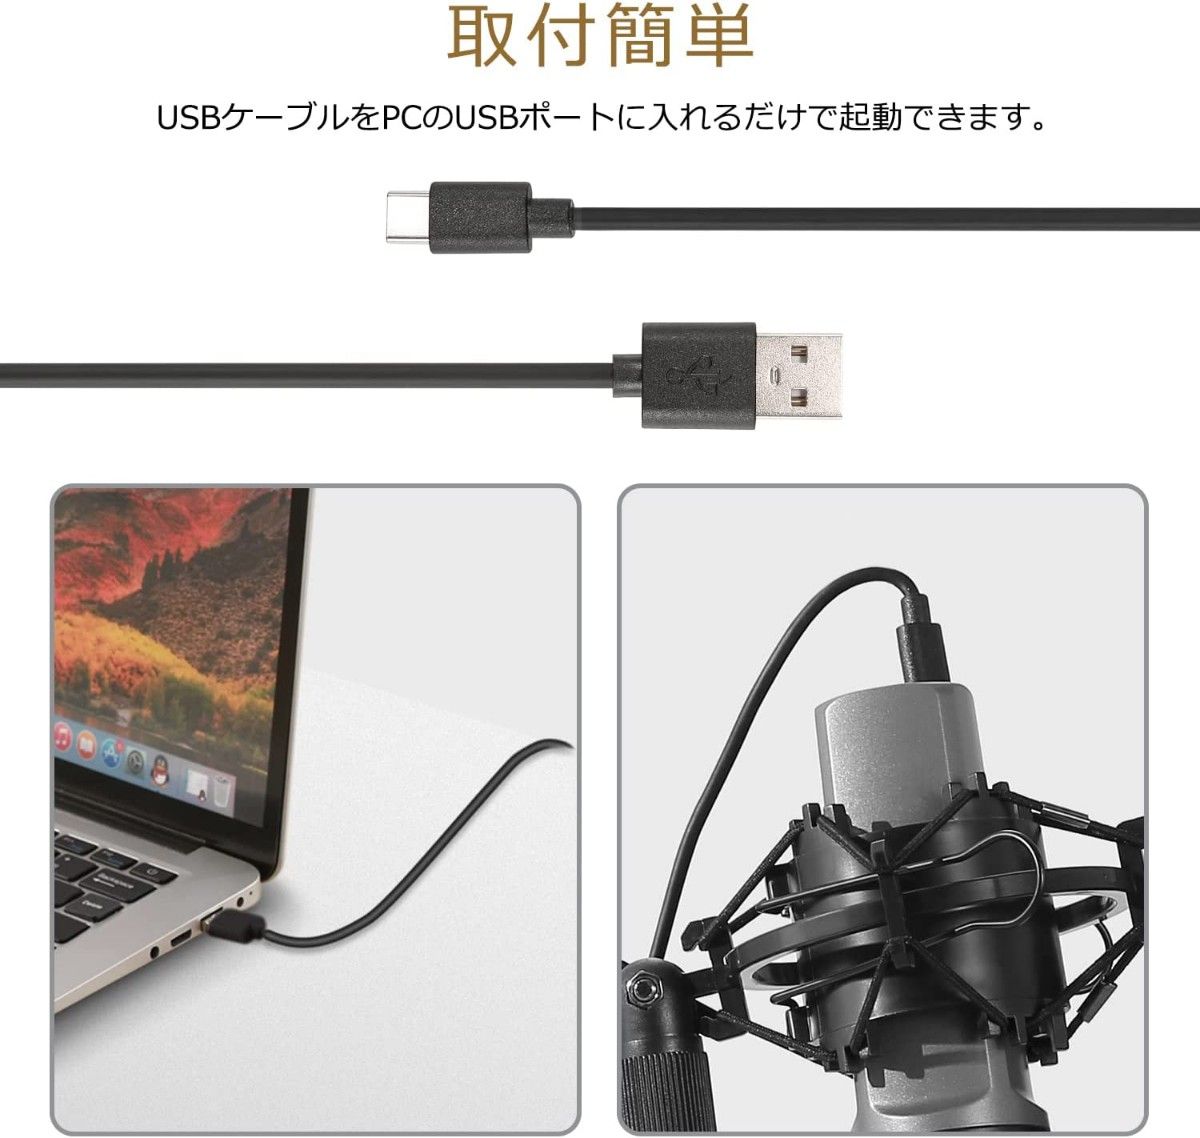 コンデンサーマイク USBマイク PCマイク ポップガード付き アームスタンドと三脚スタンド付き マイクセット  マイクスタンド